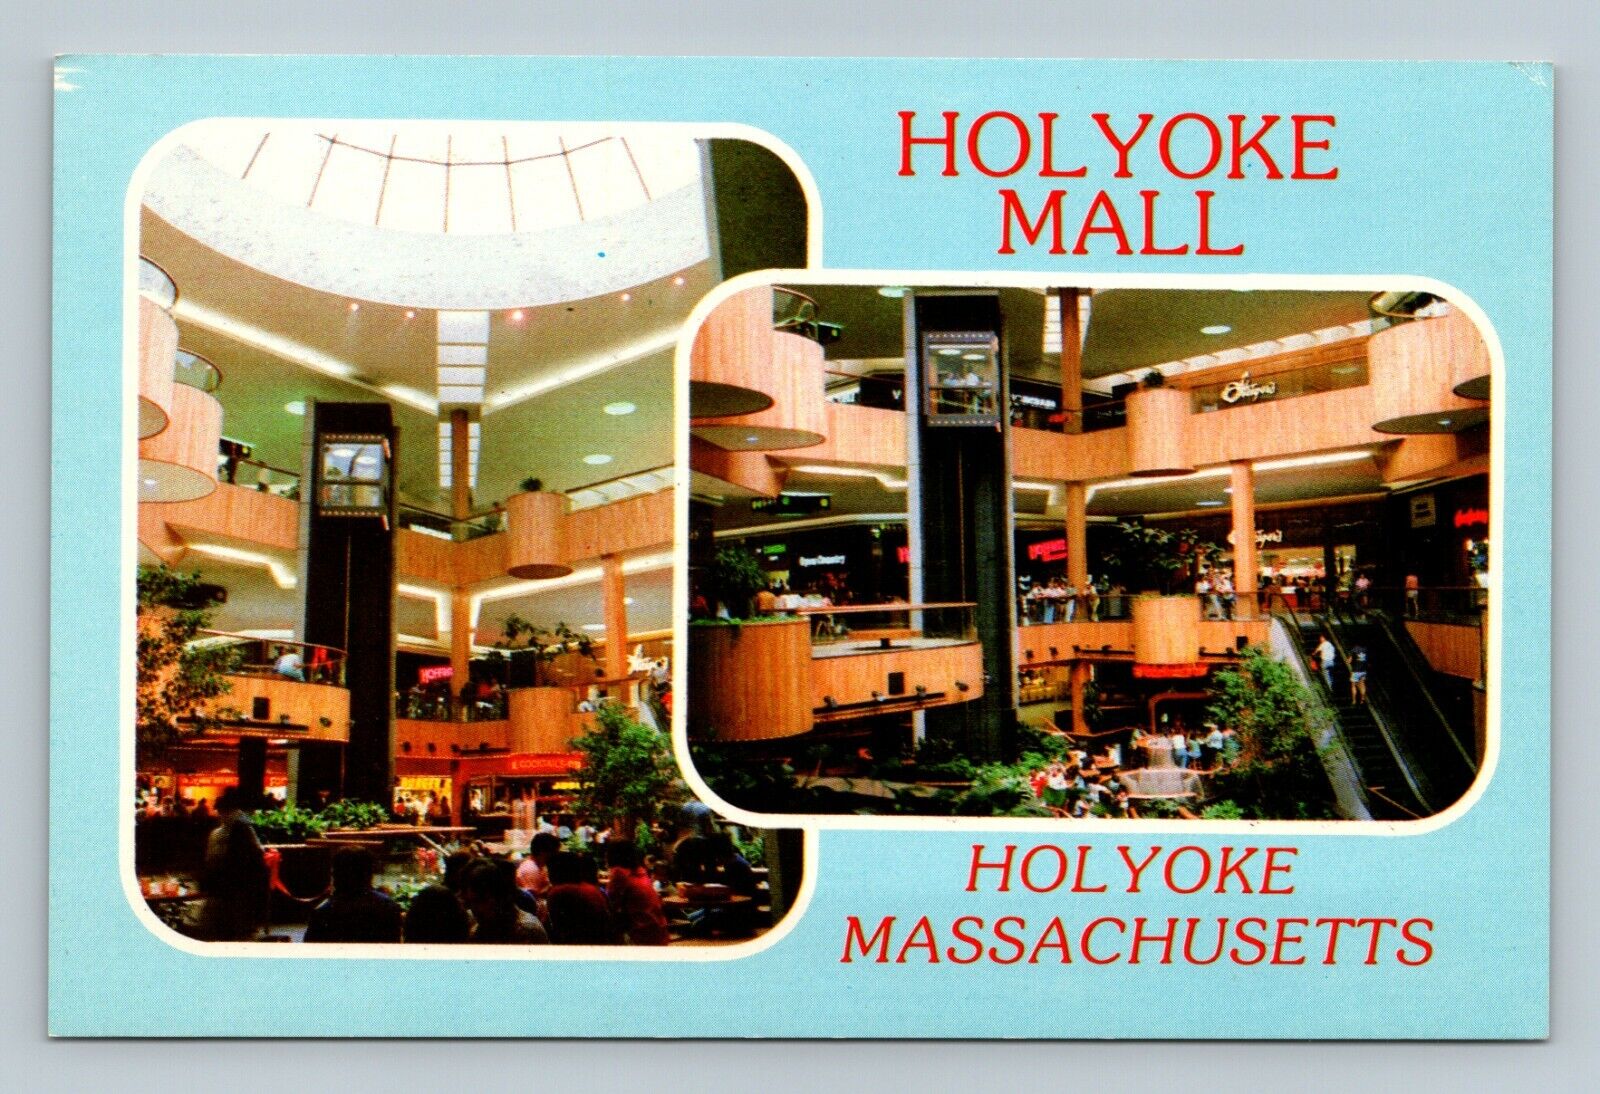 Holyoke Massachusetts MA Holyoke Mall Postcard